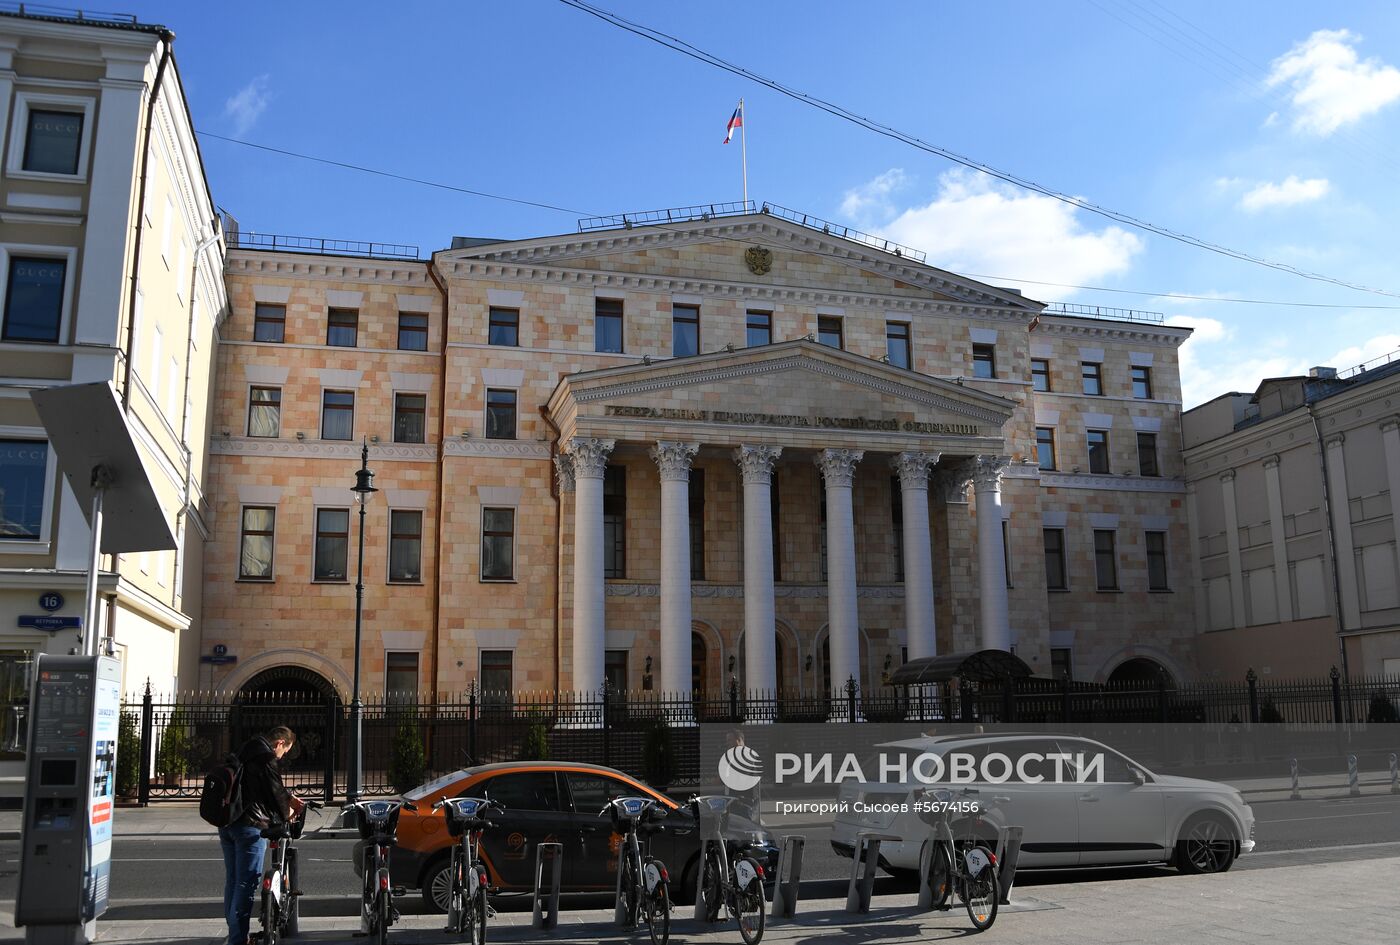 Здания органов государственной власти, федеральных министерств и ведомств в Москве